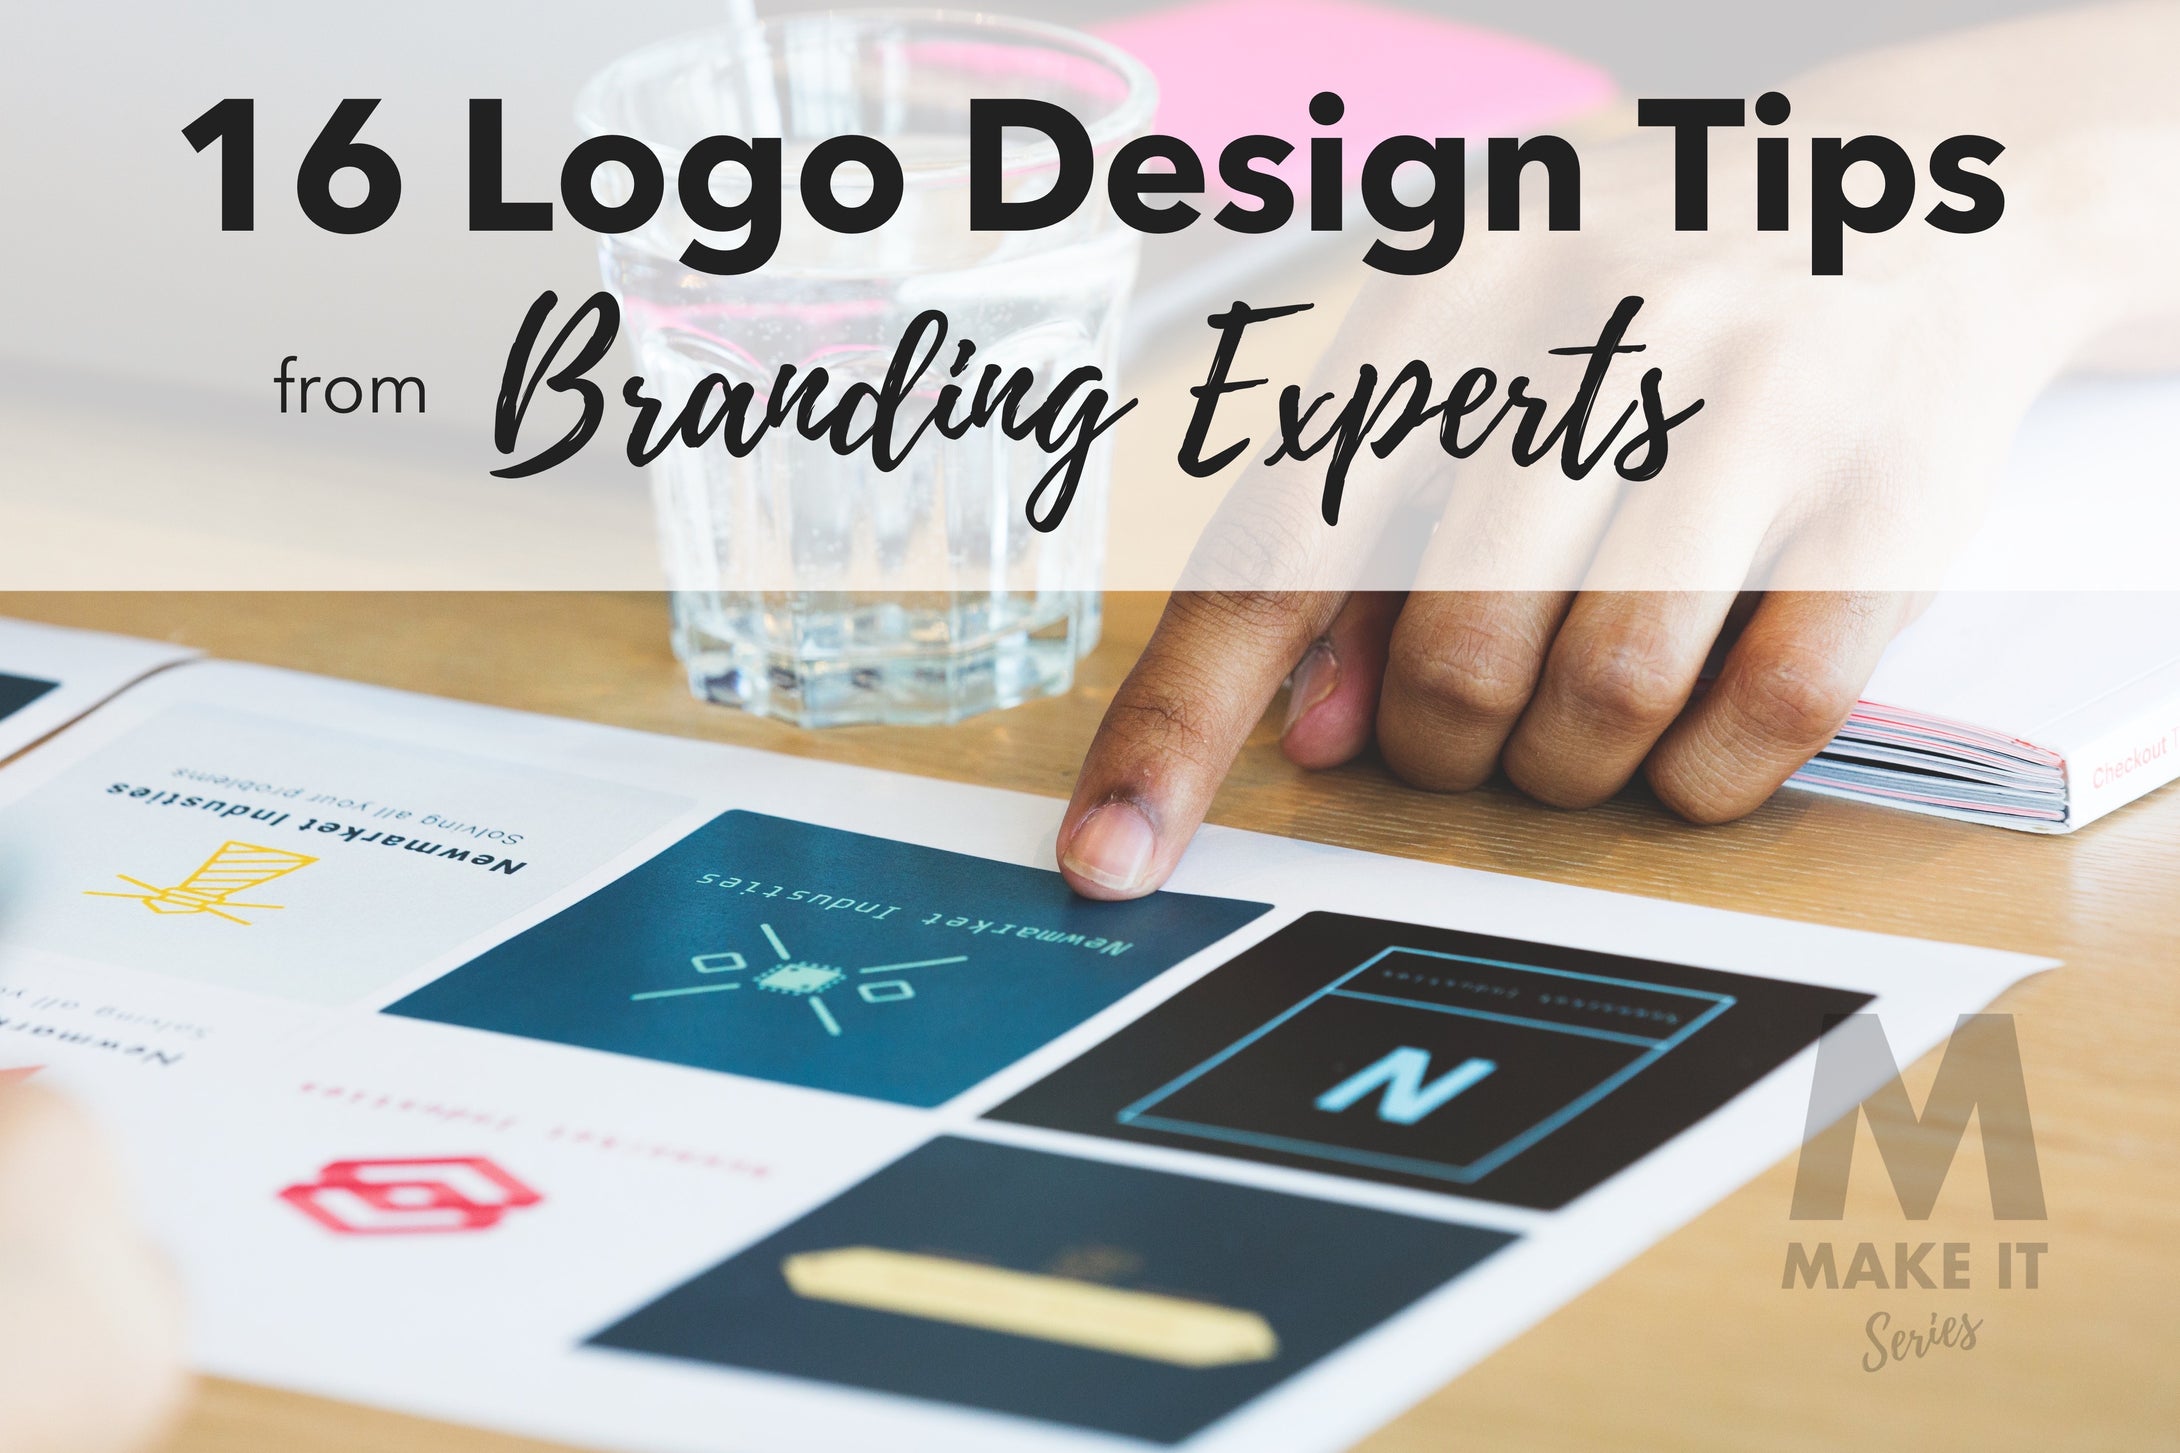 16 Logo Design Tips from Branding Experts